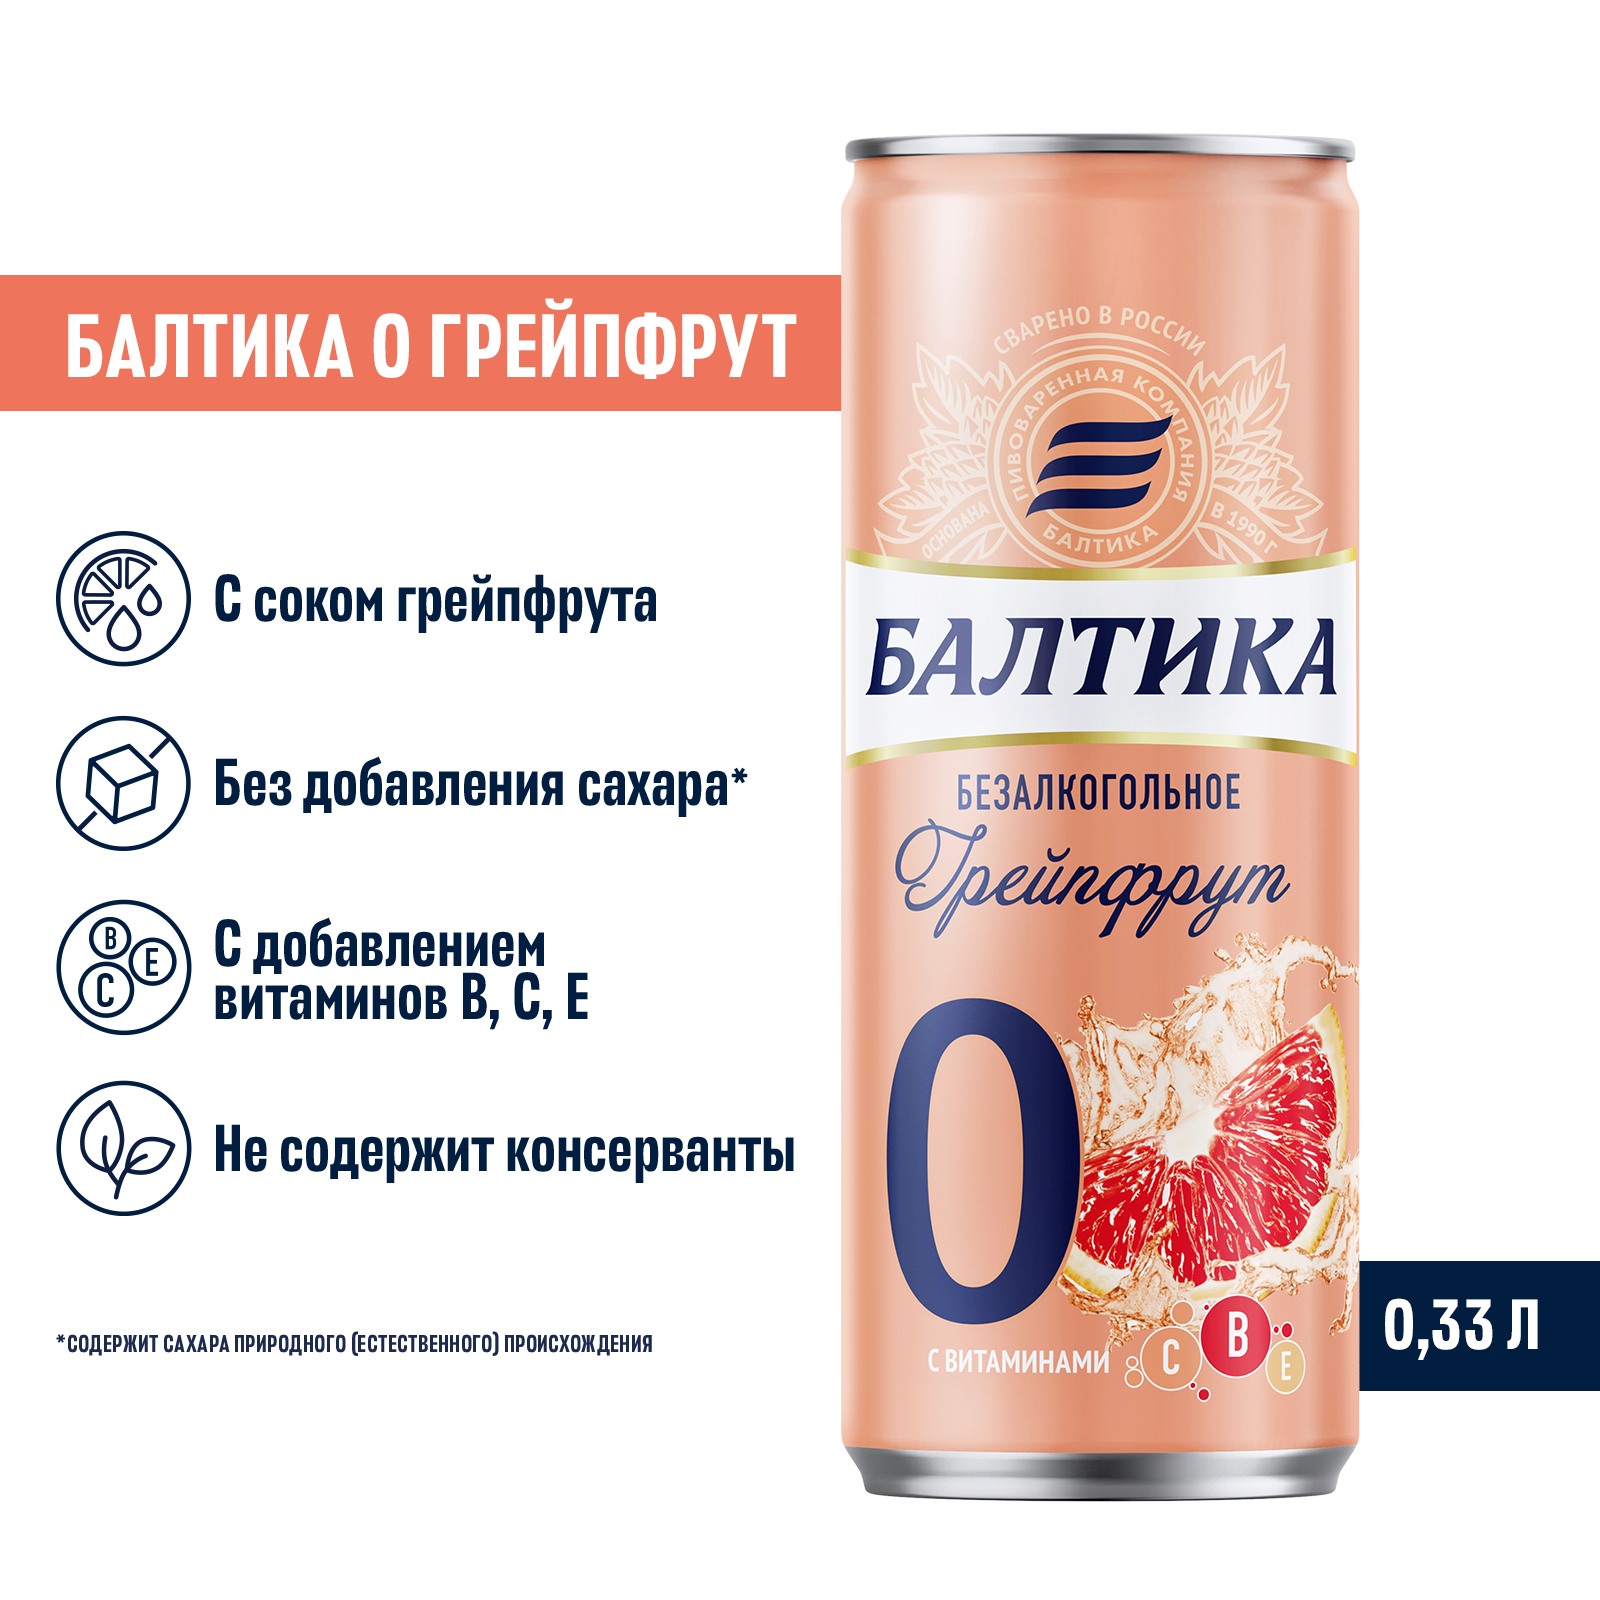 Купить напиток пивной Балтика №0 Грейпфрут безалкогольное 0.5% 0.33л, цены на Мегамаркет | Артикул: 100025762745